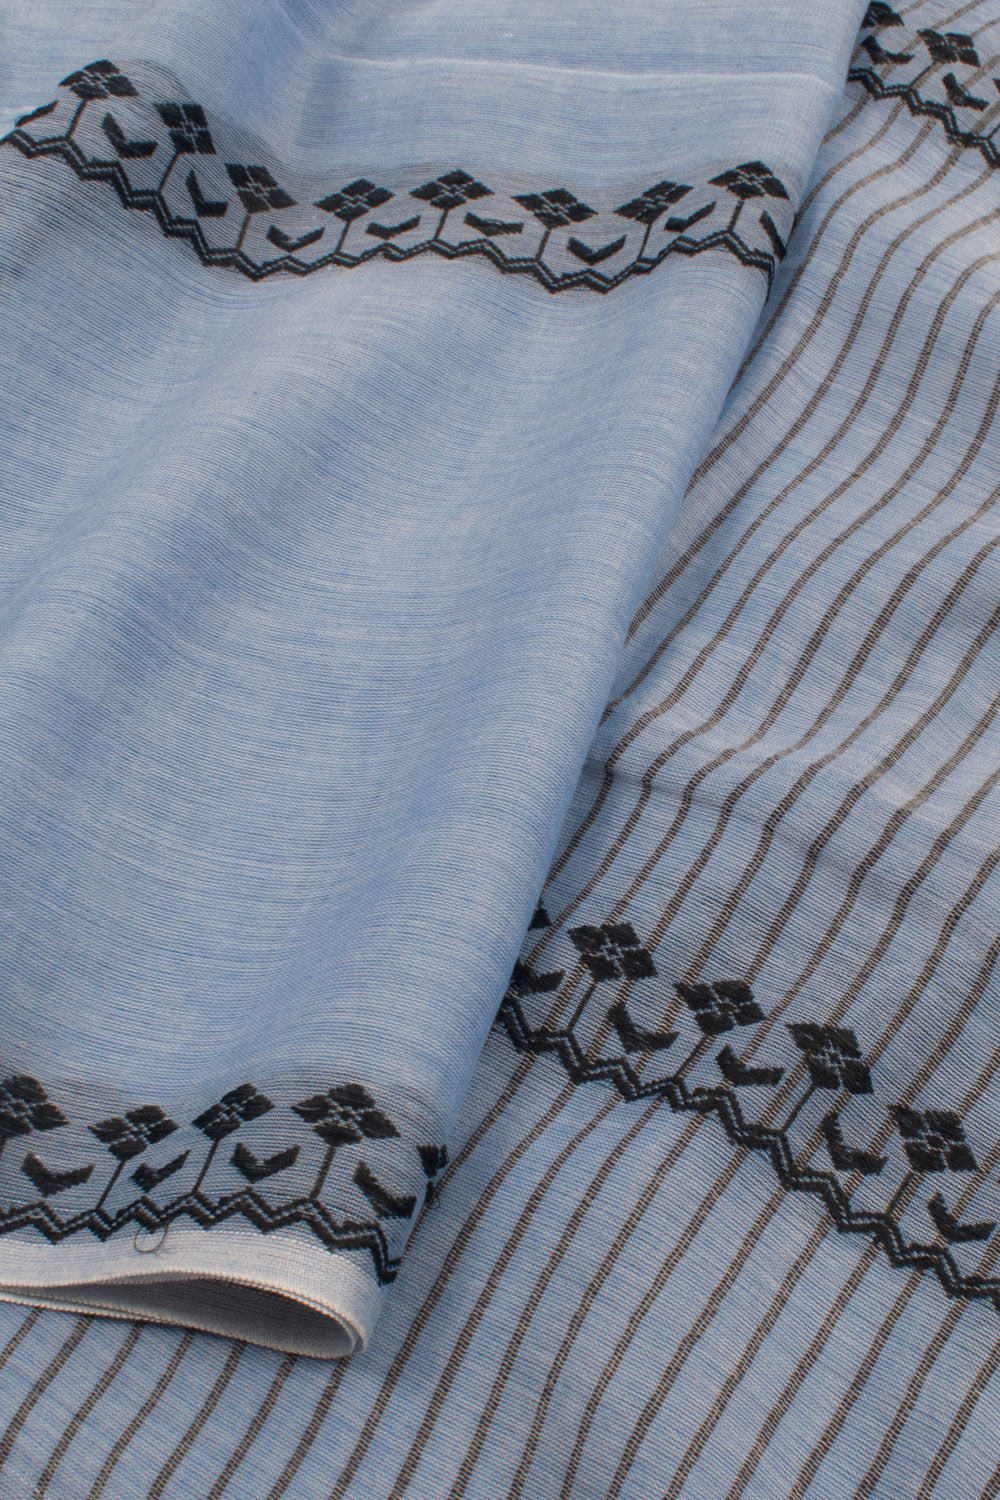 Bluish Grey Bengal Cotton Saree 10059308